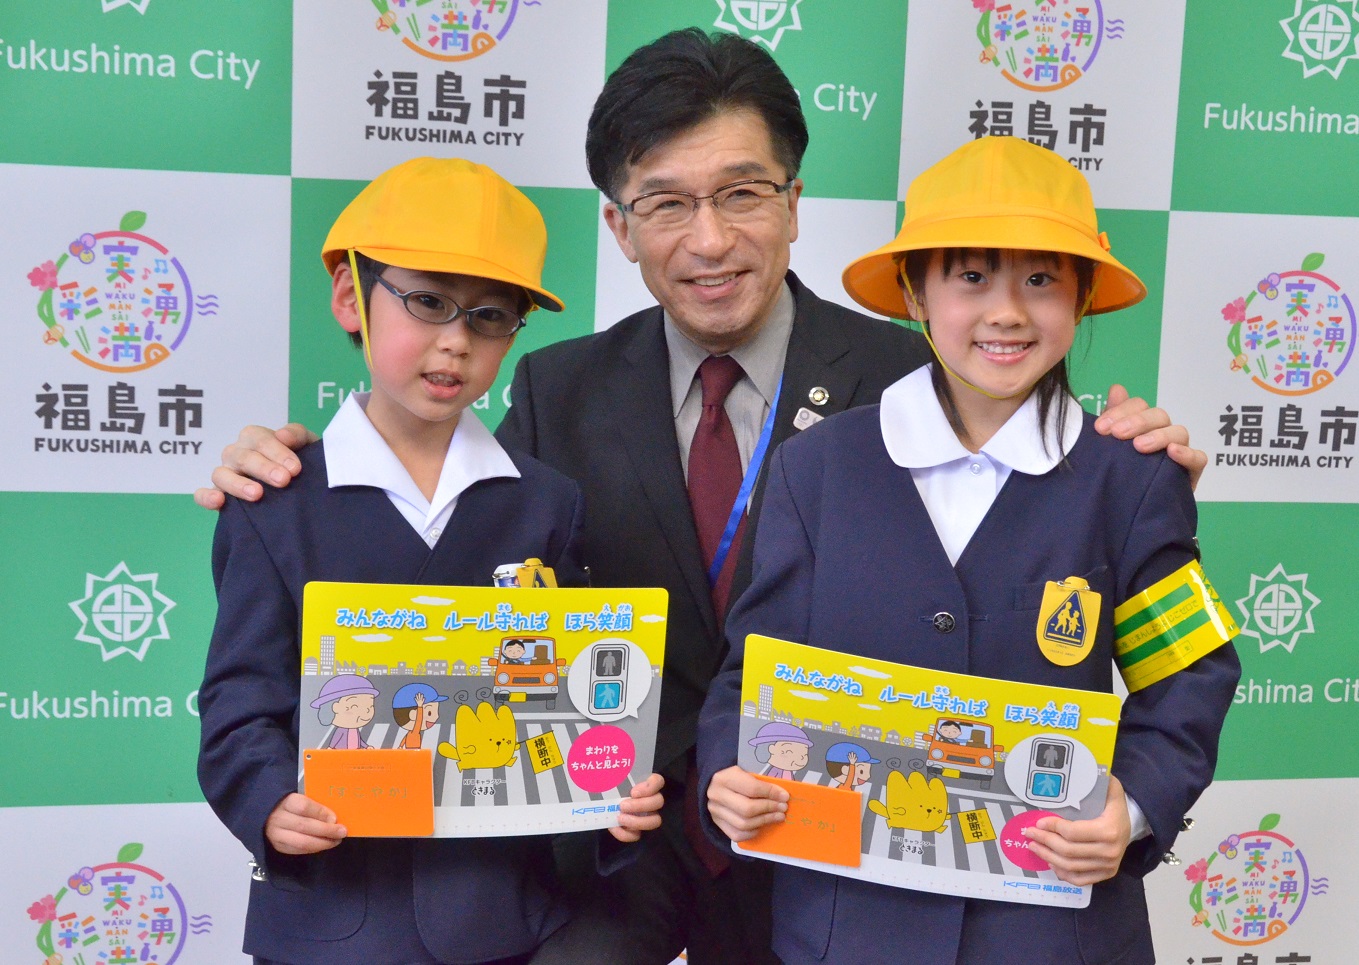 交通安全用具を受け取った新入学児童代表と市長